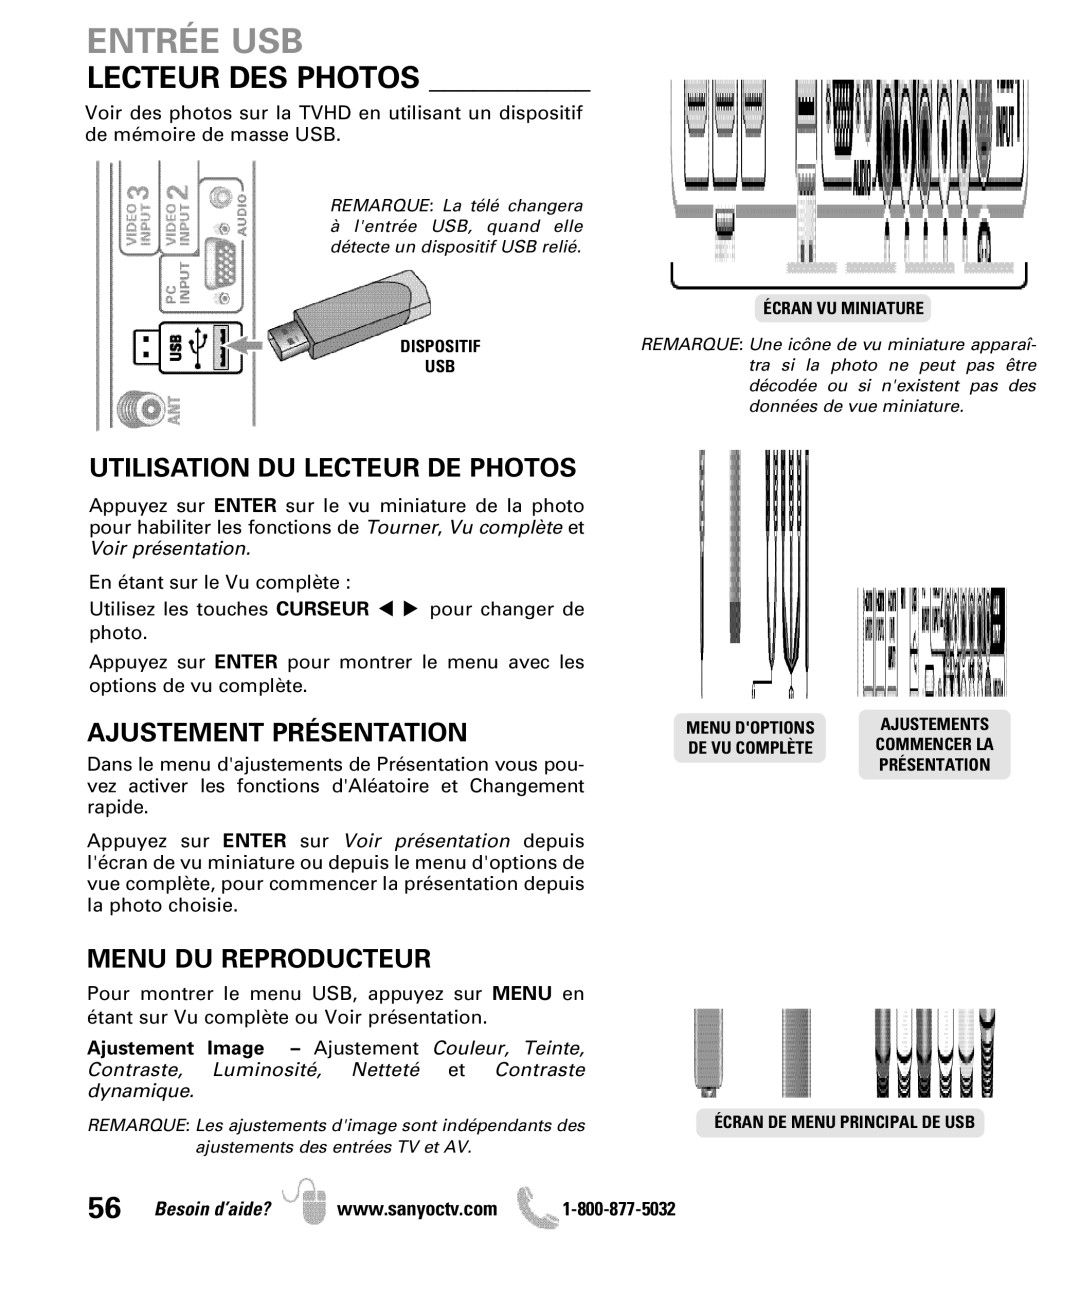 Sanyo DP50710 manual Entrée USB, Utilisation DU Lecteur DE Photos, Ajustement Présentation, Menu DU Reproducteur 